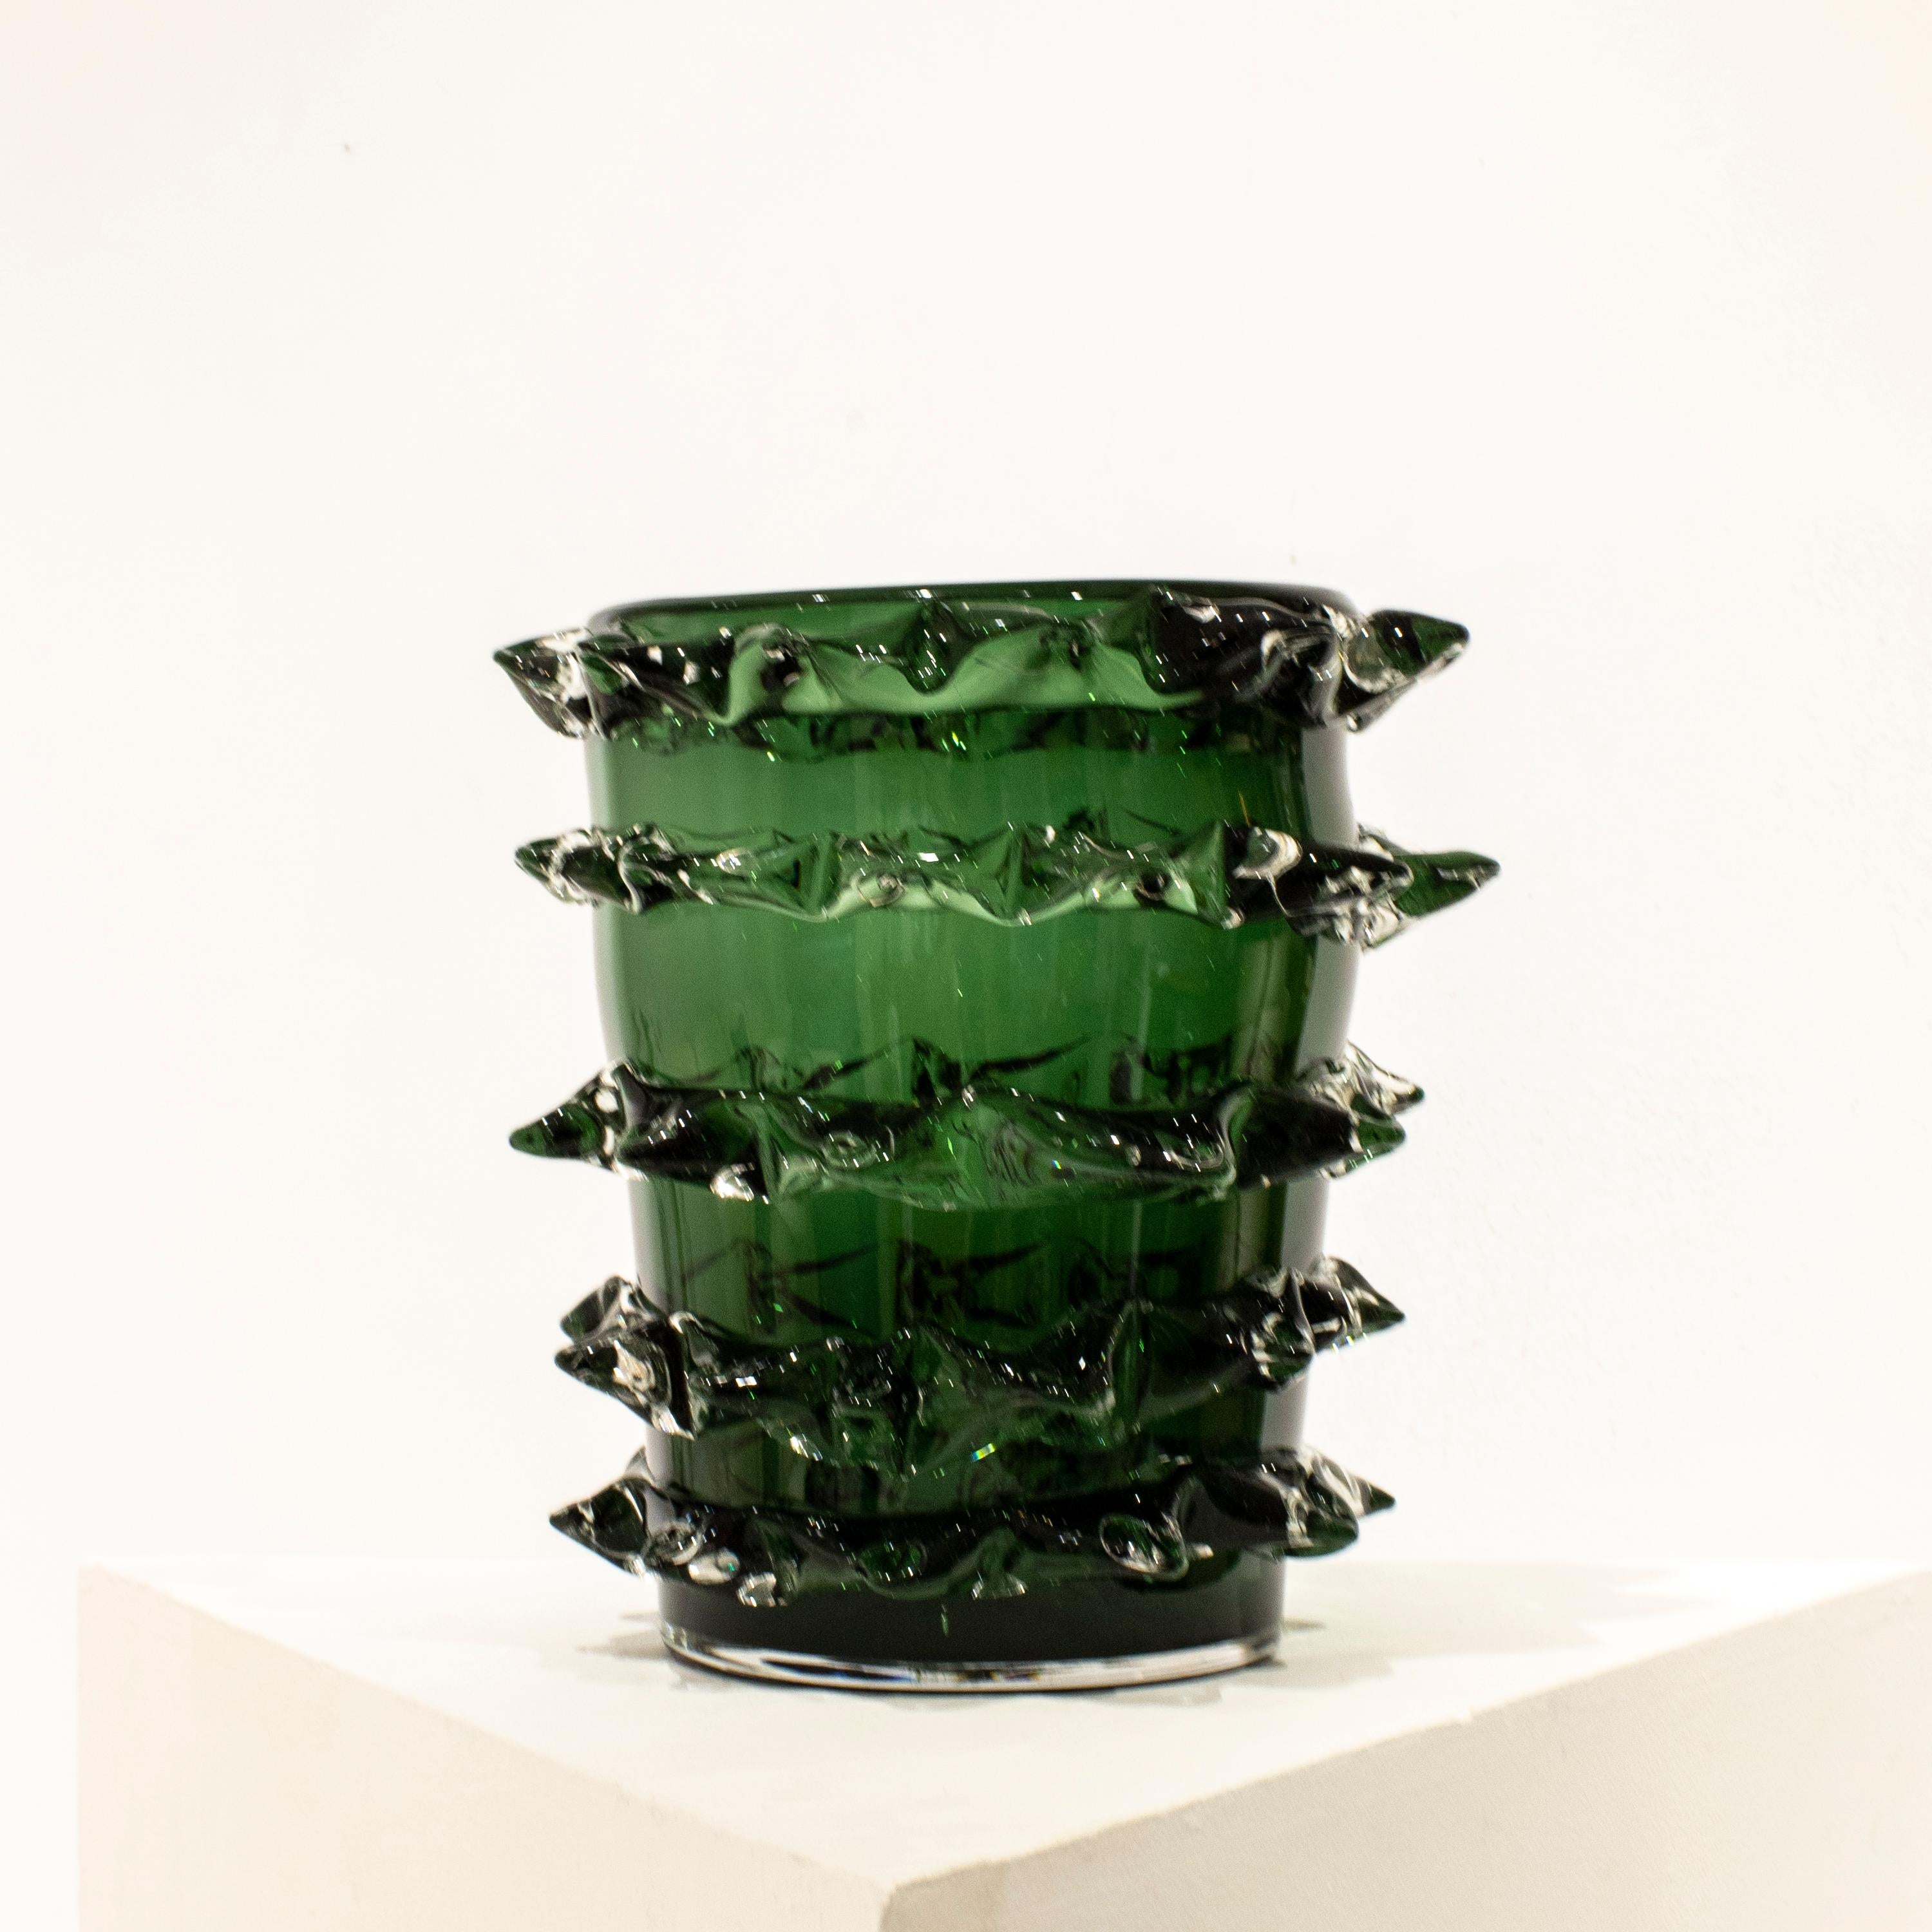 Vase en verre semi-transparent vert italien soufflé à la main.